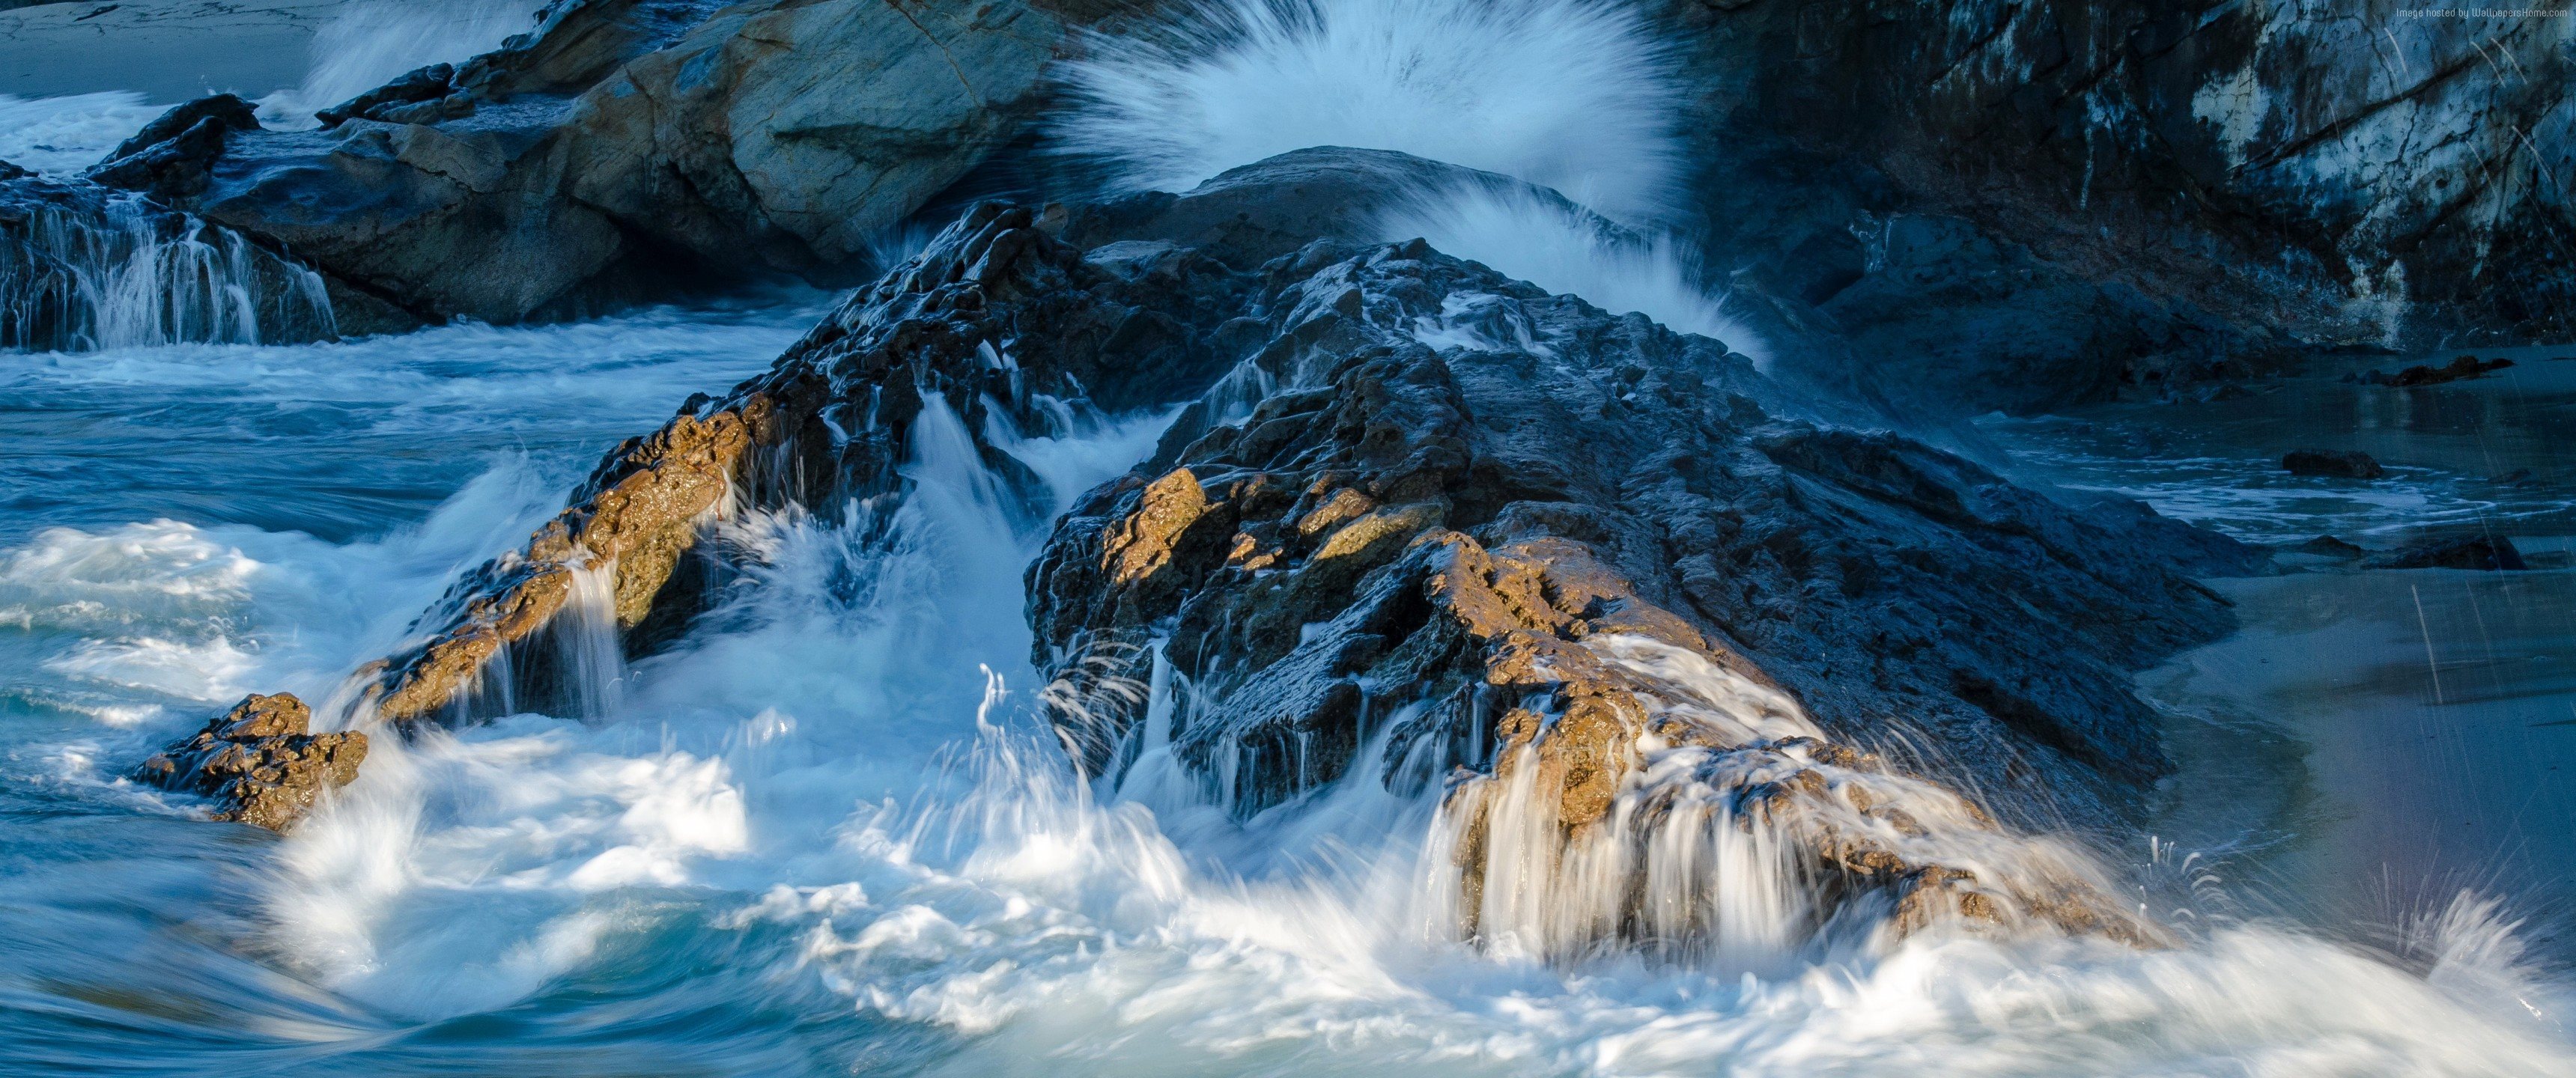 ダウンロード画像 ロック 波 岩 カリフォルニア 米国 画面の解像度 3440x1440 壁紙デスクトップ上